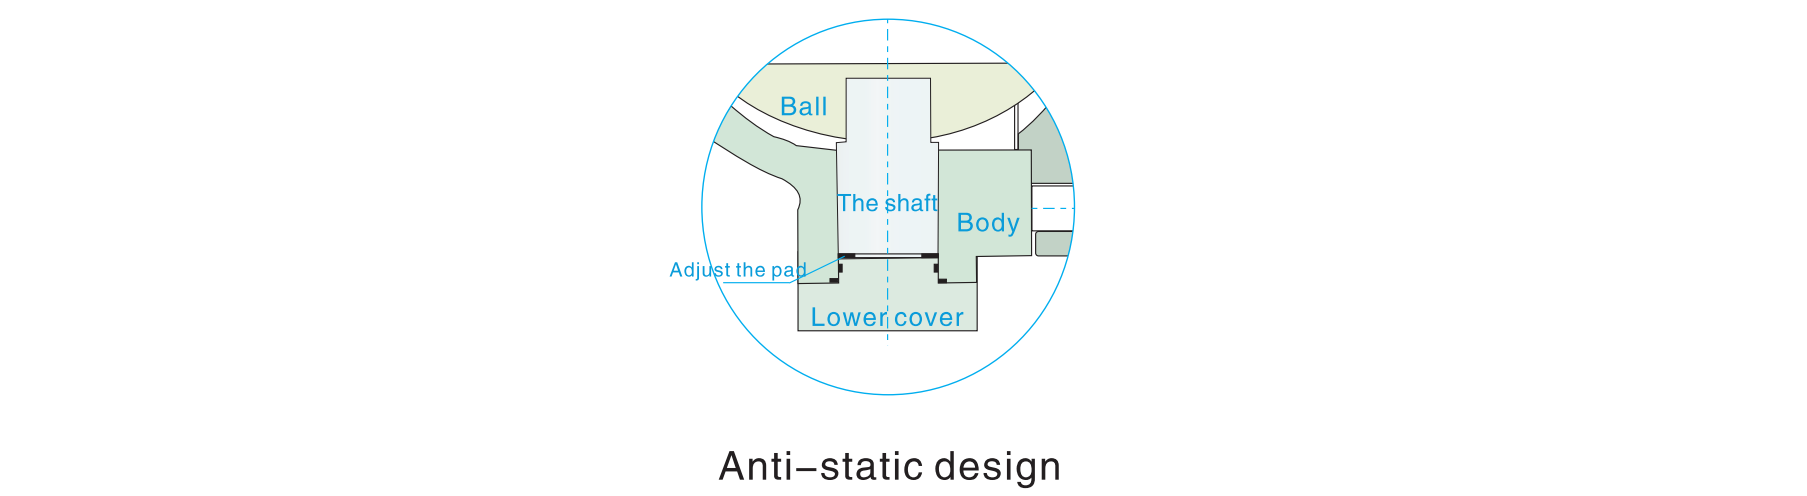 anti static design trunnion ball valves